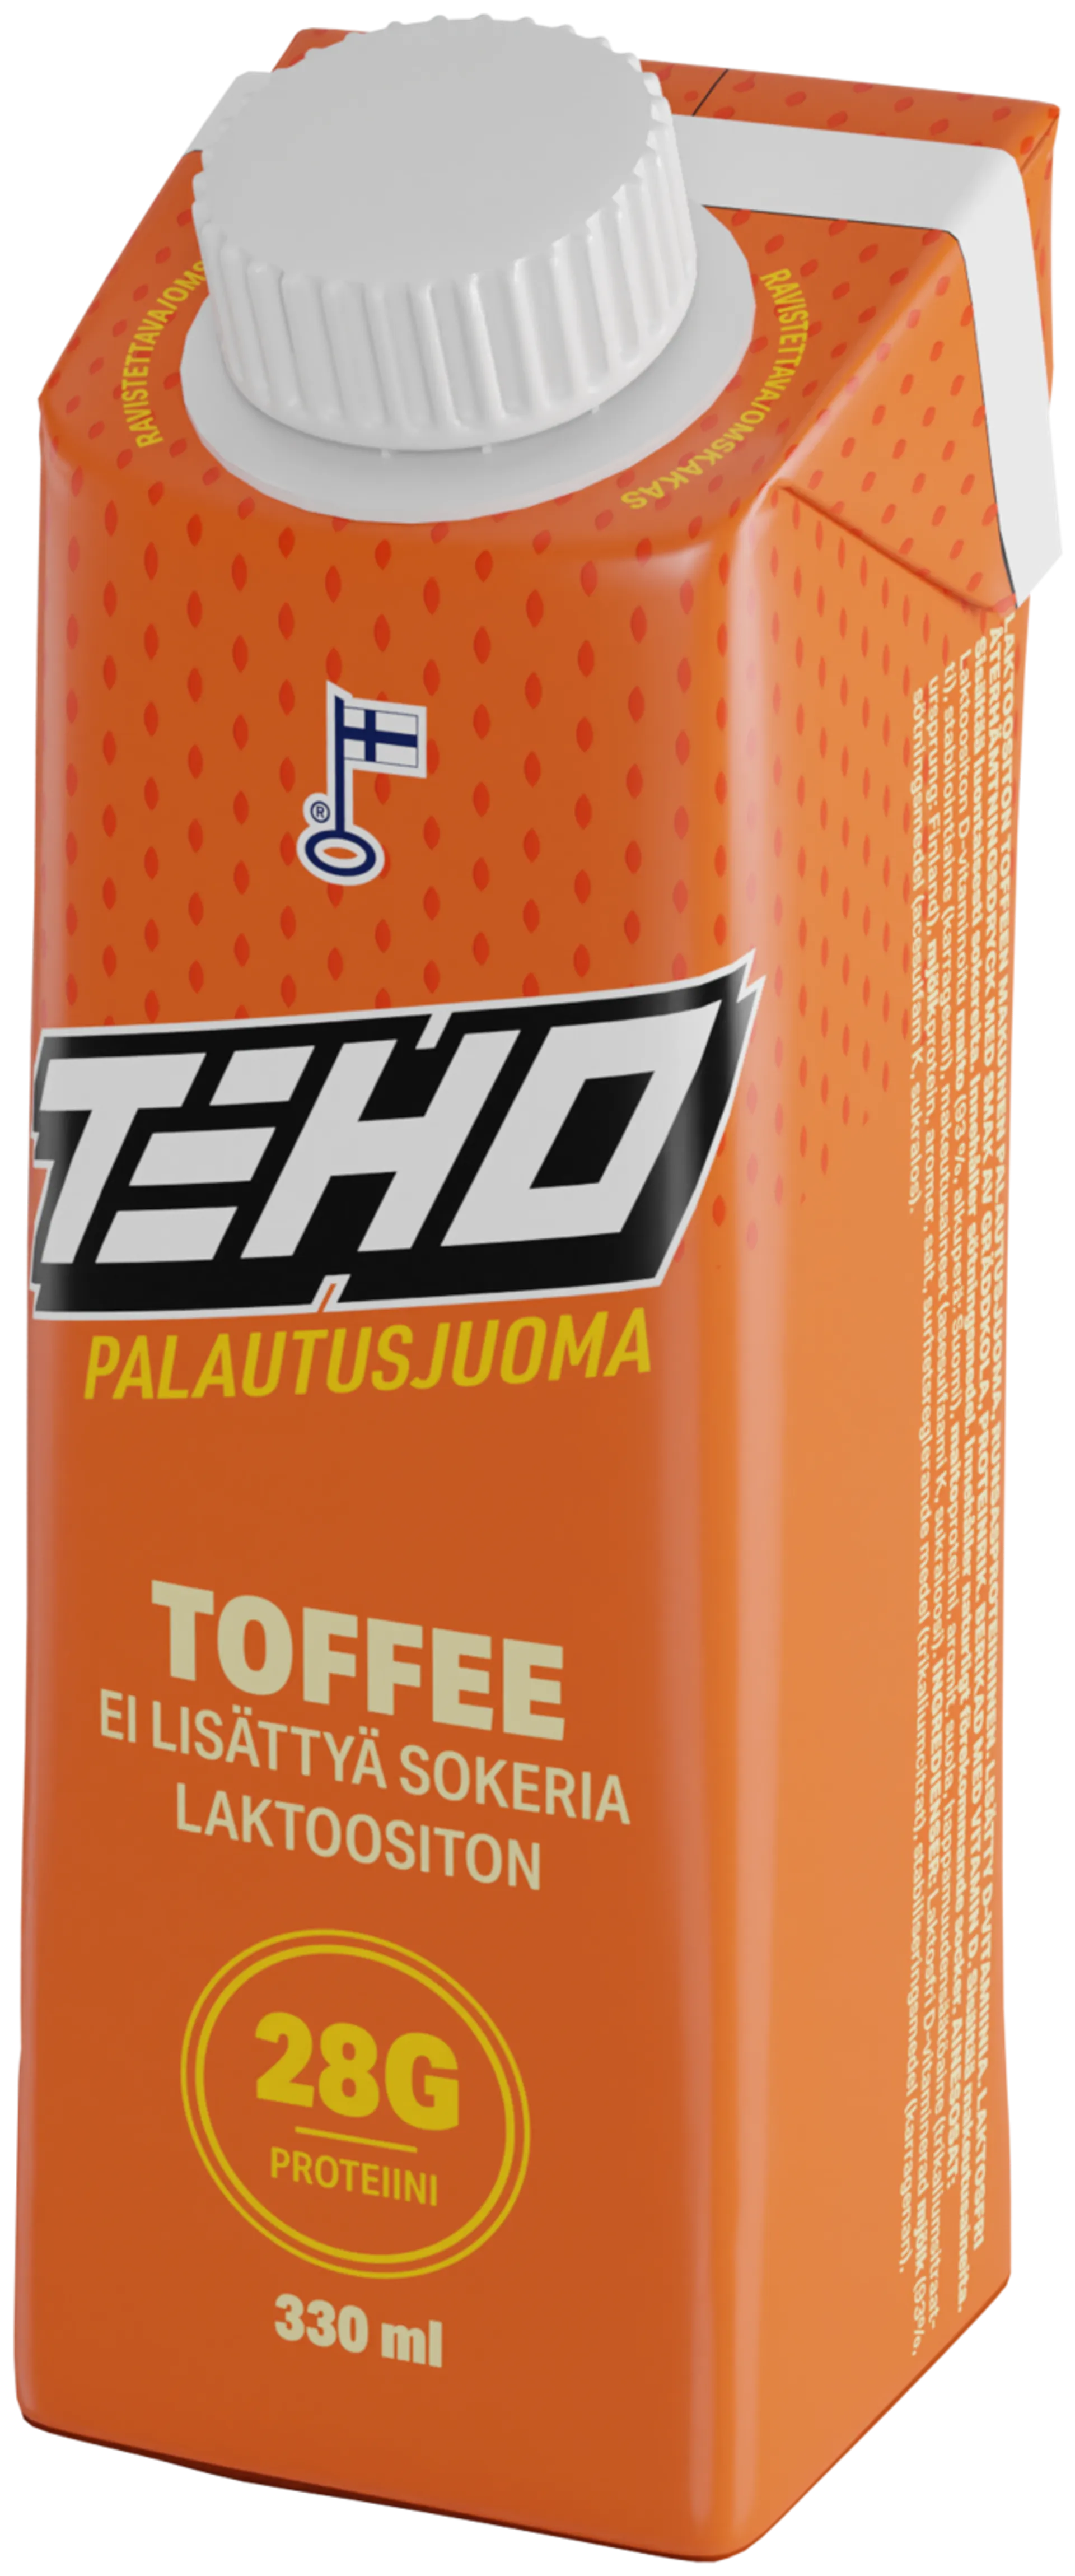 TEHO Toffee palautusjuoma 0,33 l